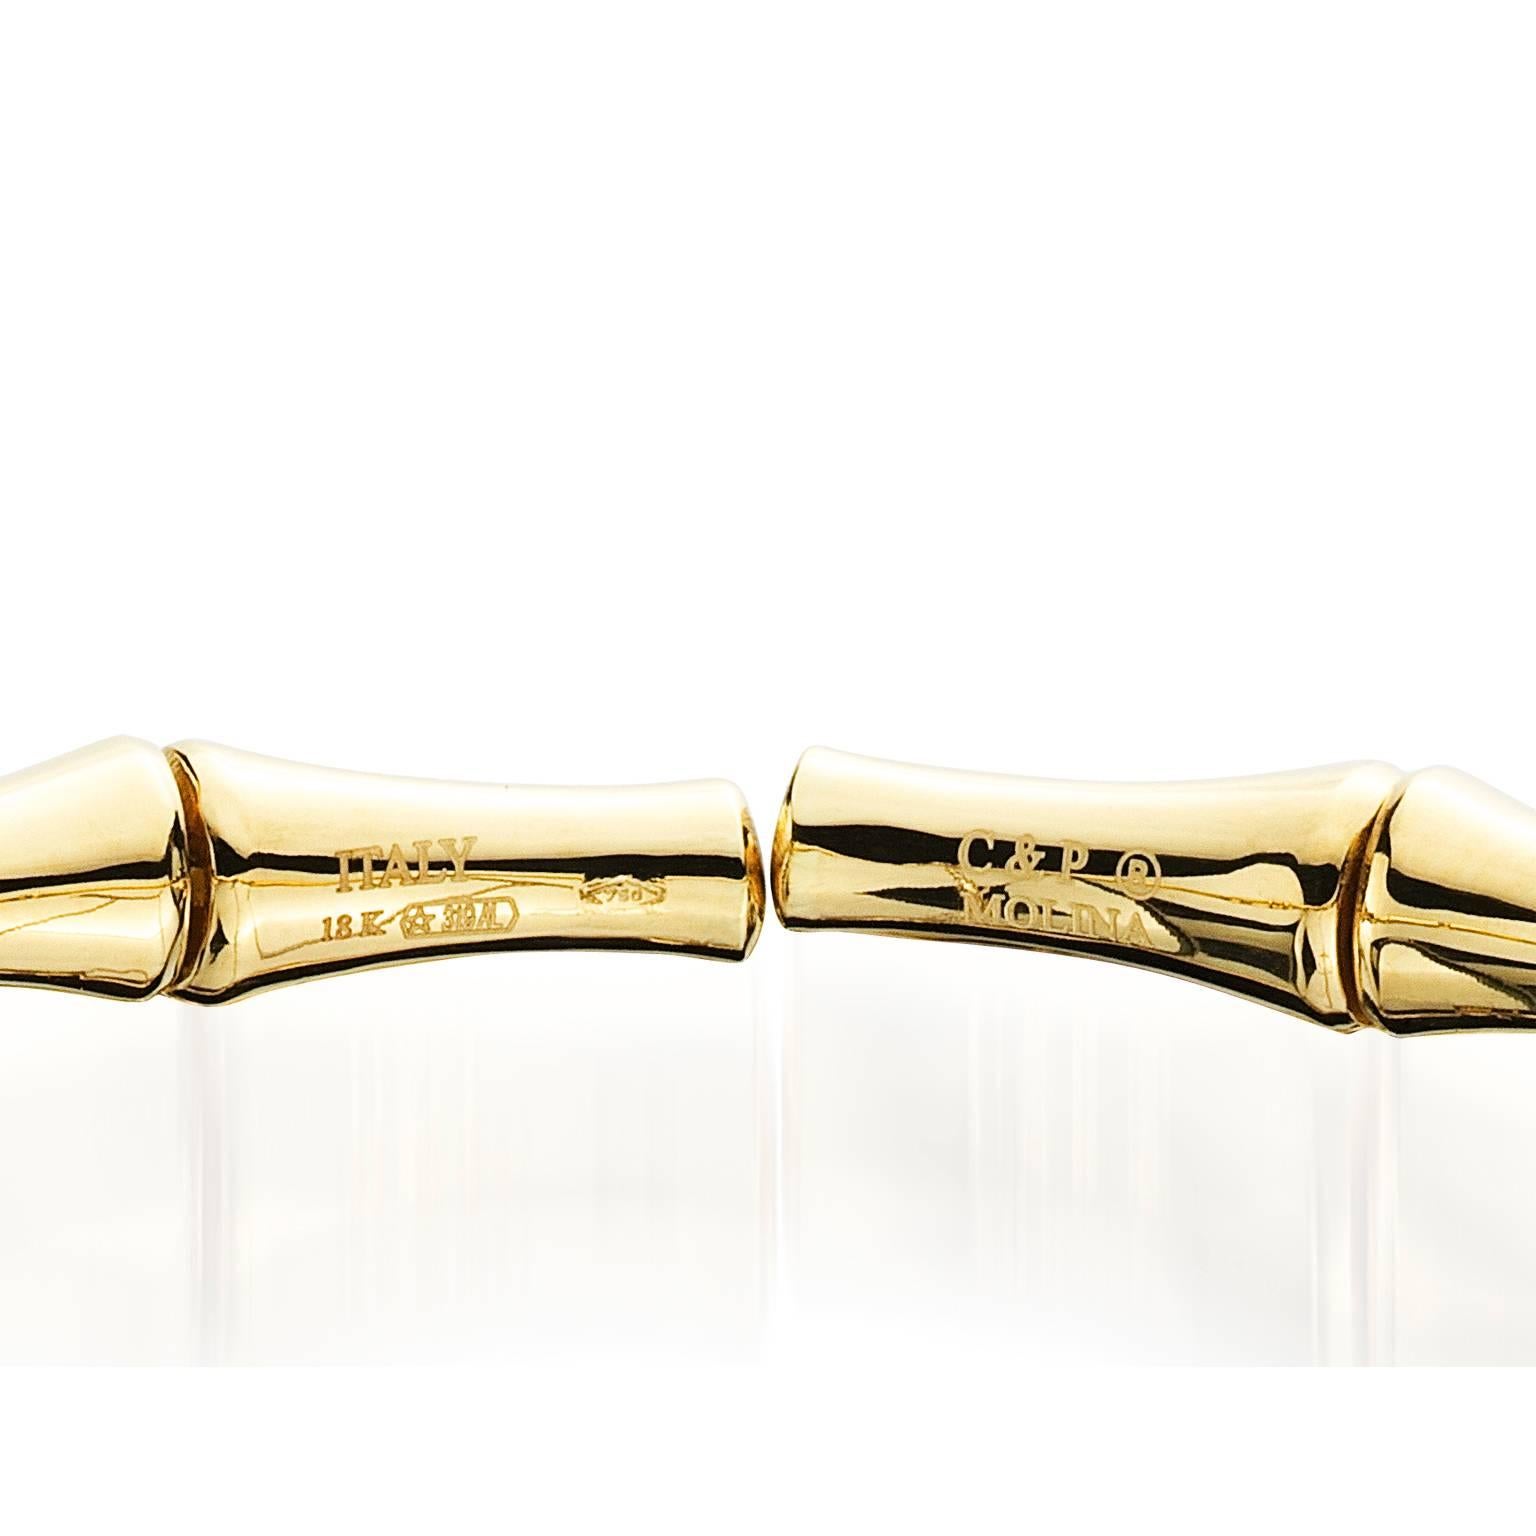 Bracelet signature en bambou, rappelant le design classique du milieu du siècle. Ce bracelet en or jaune 18 carats a été réalisé sur mesure par Molina pour Campanelli & PEAR. Dans la culture chinoise, le bambou symbolise la force, l'acceptation du